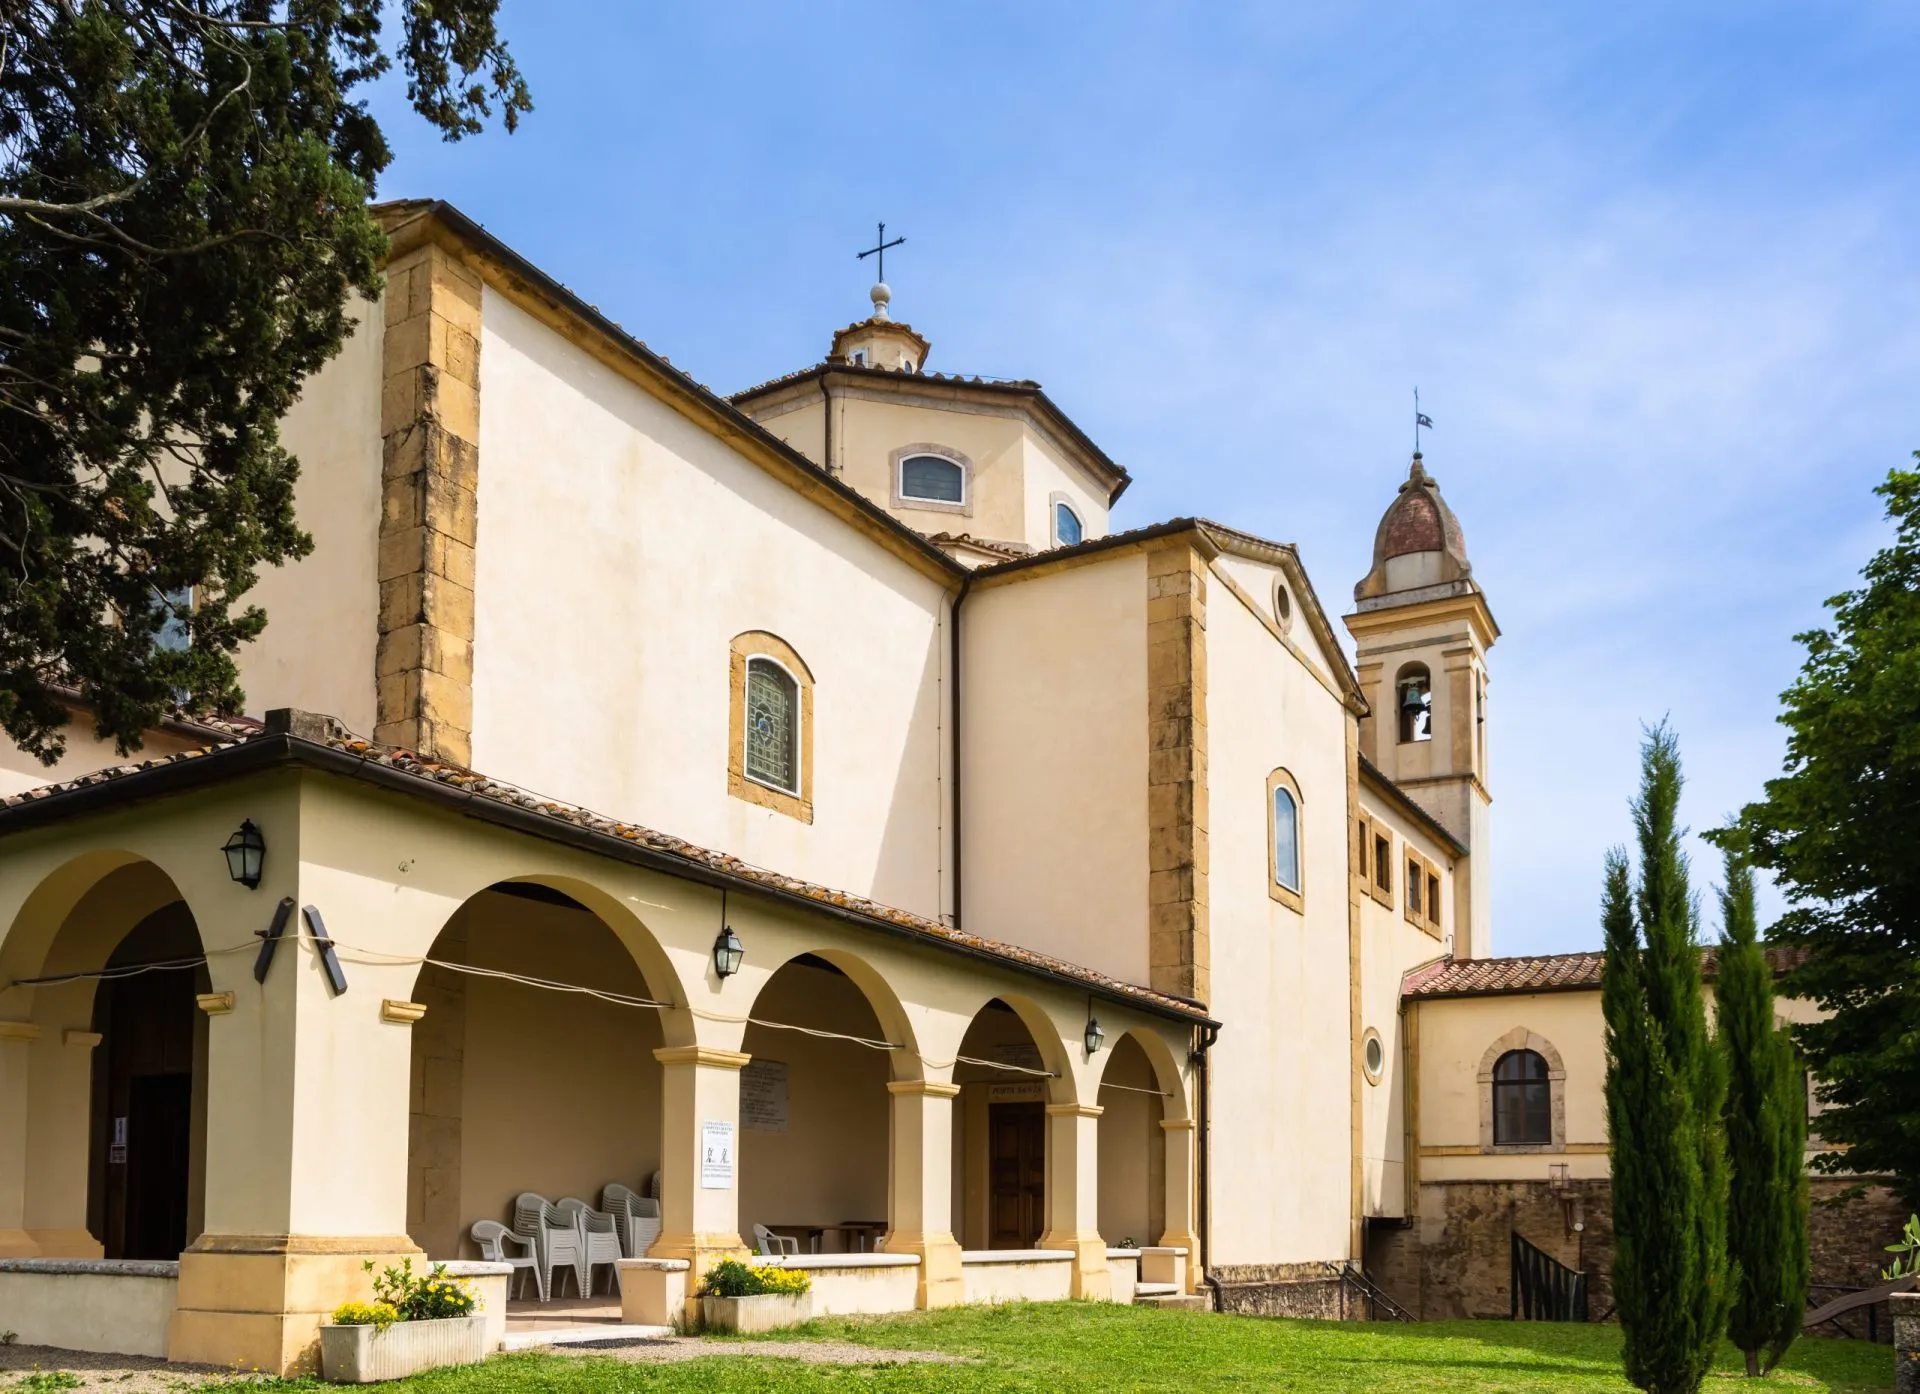 The Sanctuary of Maria Santissima Madre della Divina Provvidenza. The church is located in Pancole, San Gimignano, Pisa  - June 2, 2021